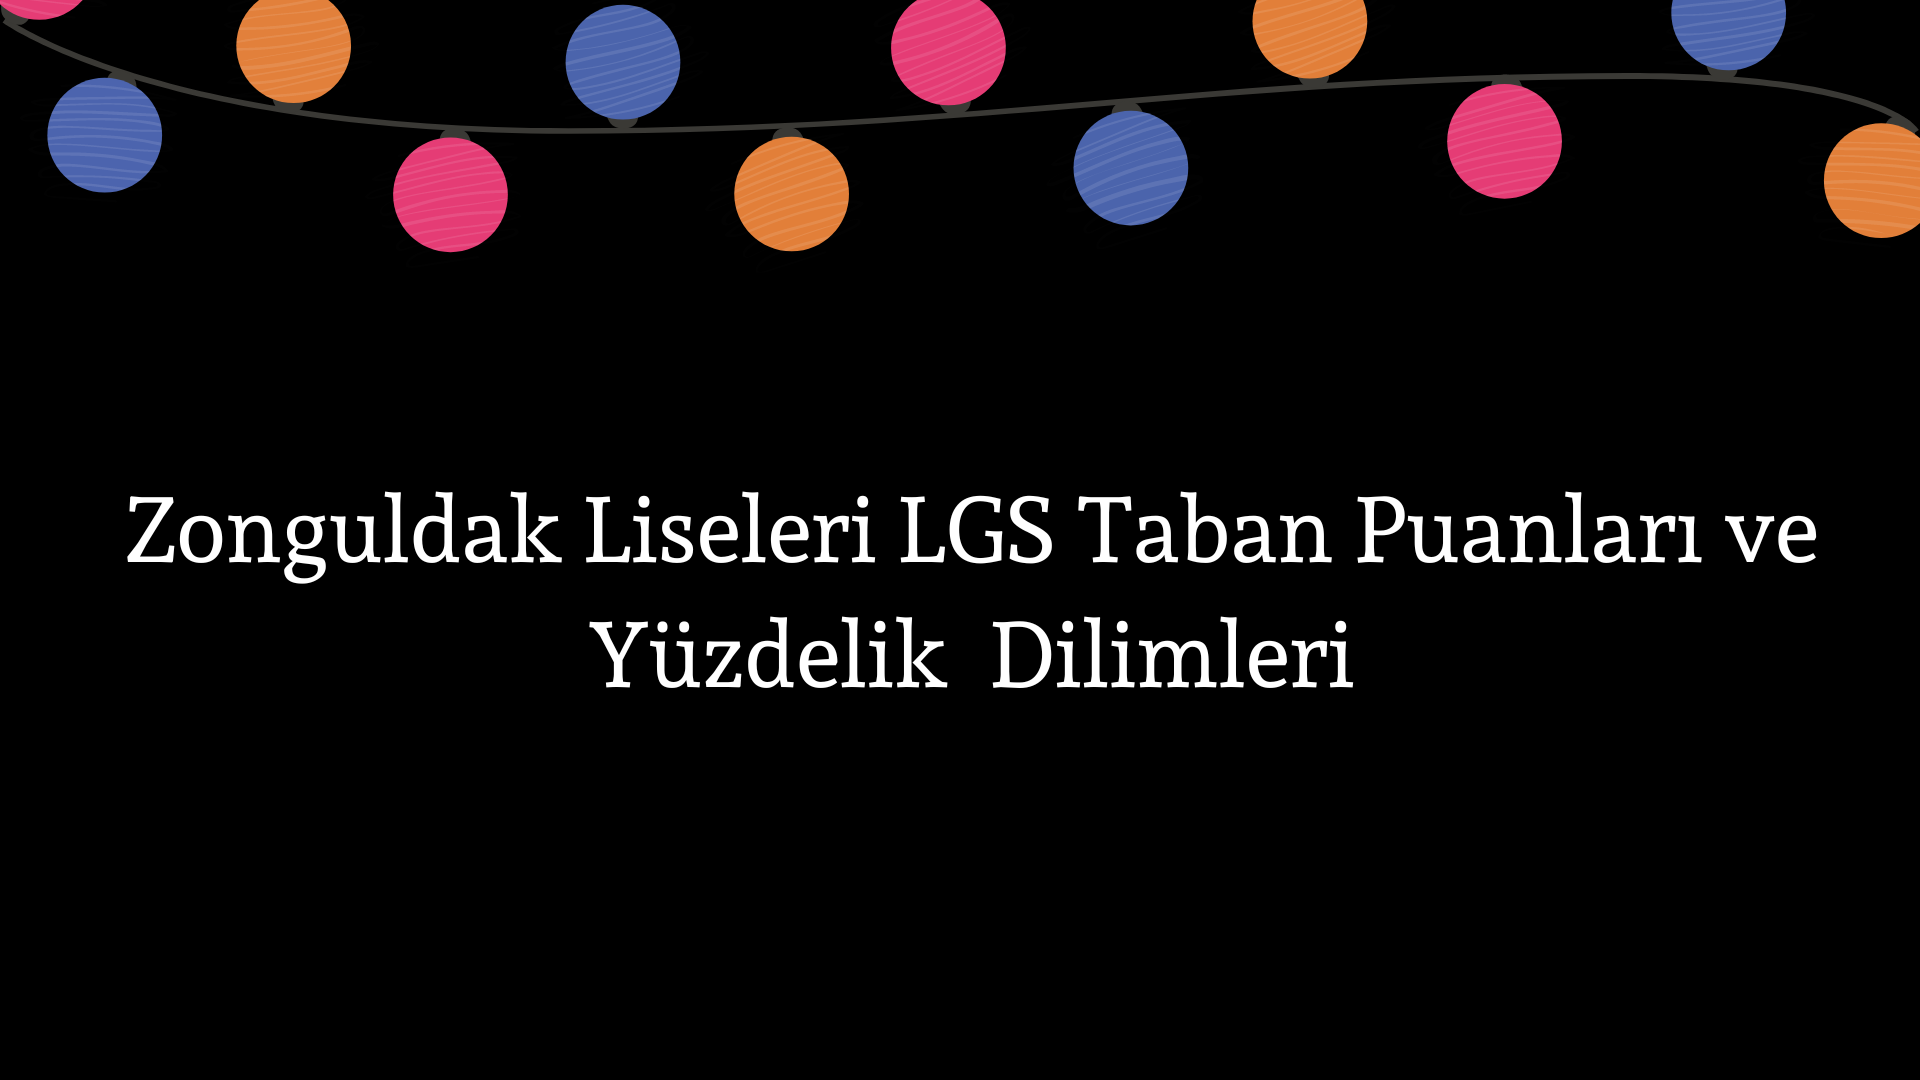 Zonguldak Liseleri Taban Puanları ve Yüzdelik Dilimleri LGS-MEB 2022